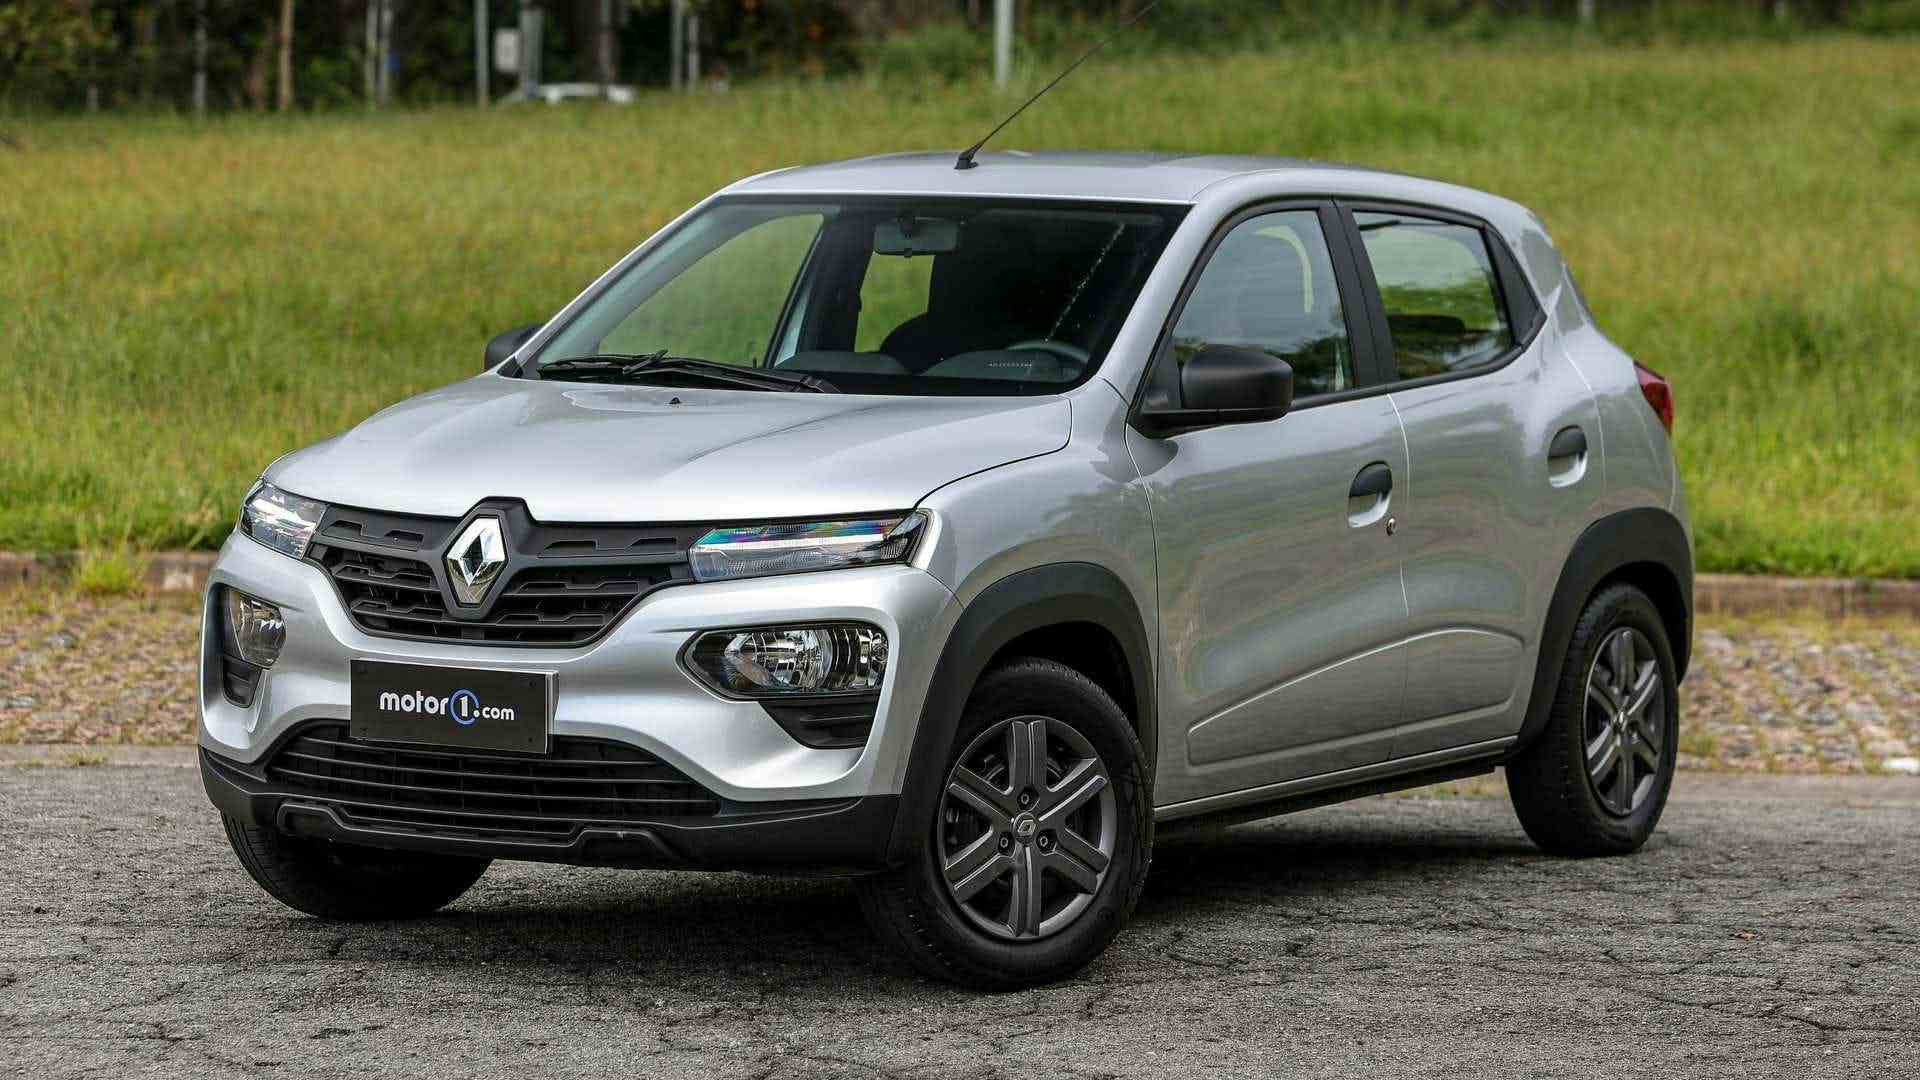 Renault Kwid Zen